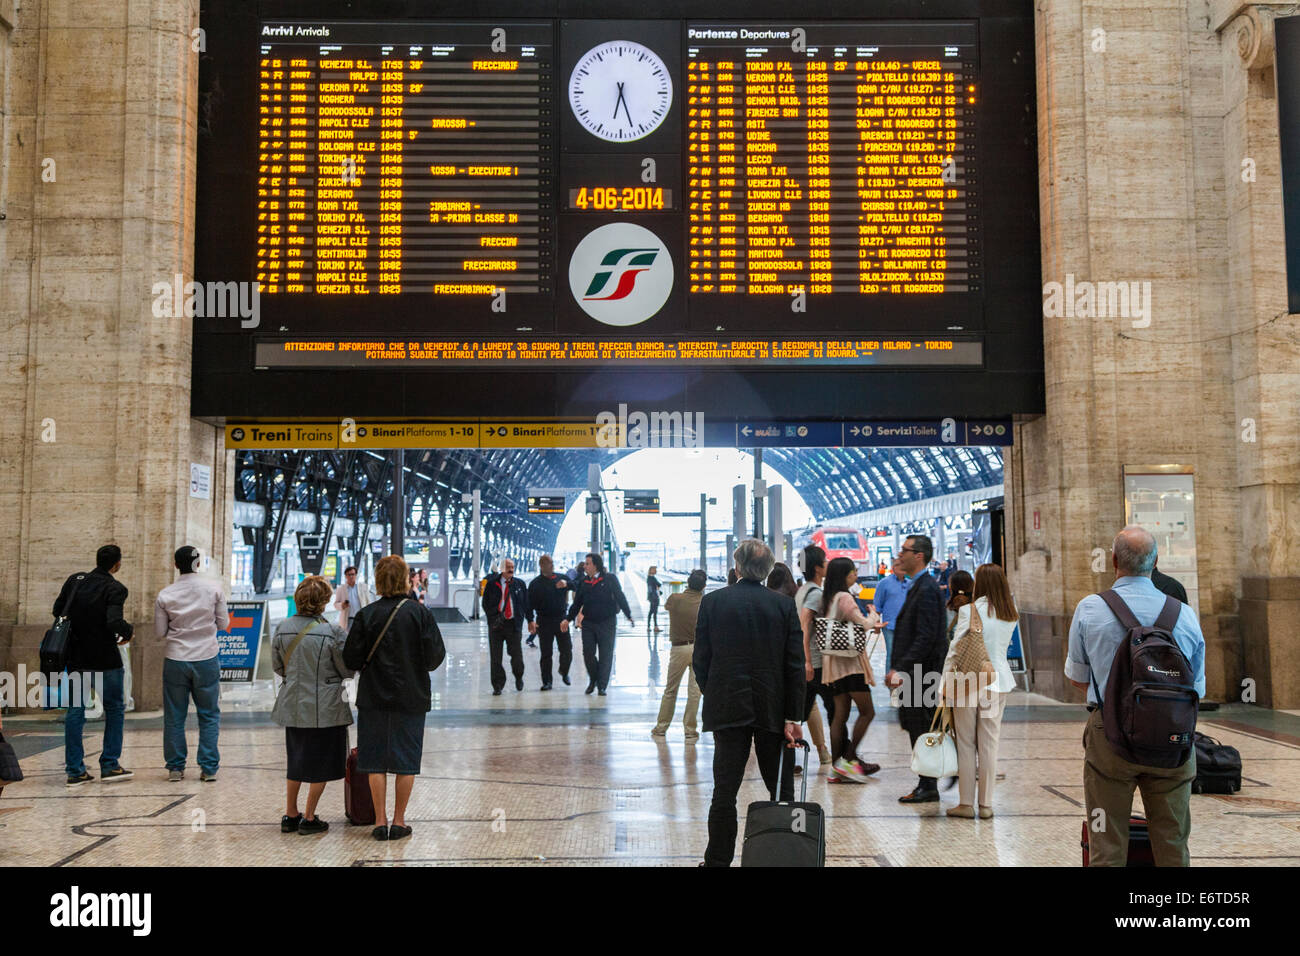 Les départs de train électronique et l'attente des passagers, la gare centrale de Milan, Italie Banque D'Images